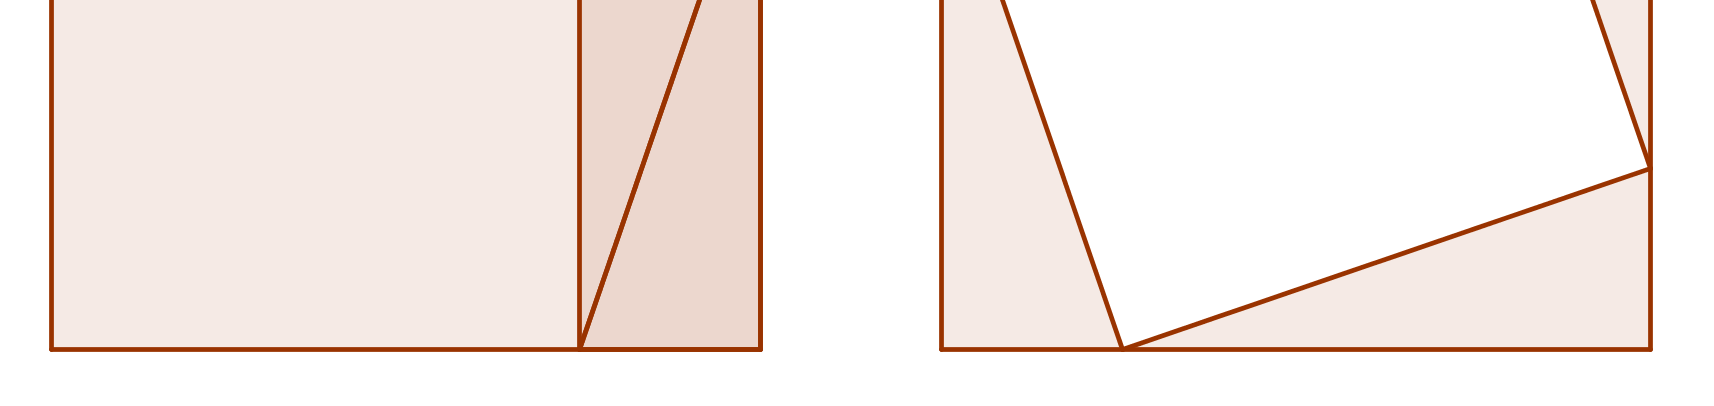 1.8 Pythagoras setning Setning 1.8.1: Pythagoras setning. I en rettvinklet trekant er kvadratet på hypotenusen lik summen av kvadratene på katetene.